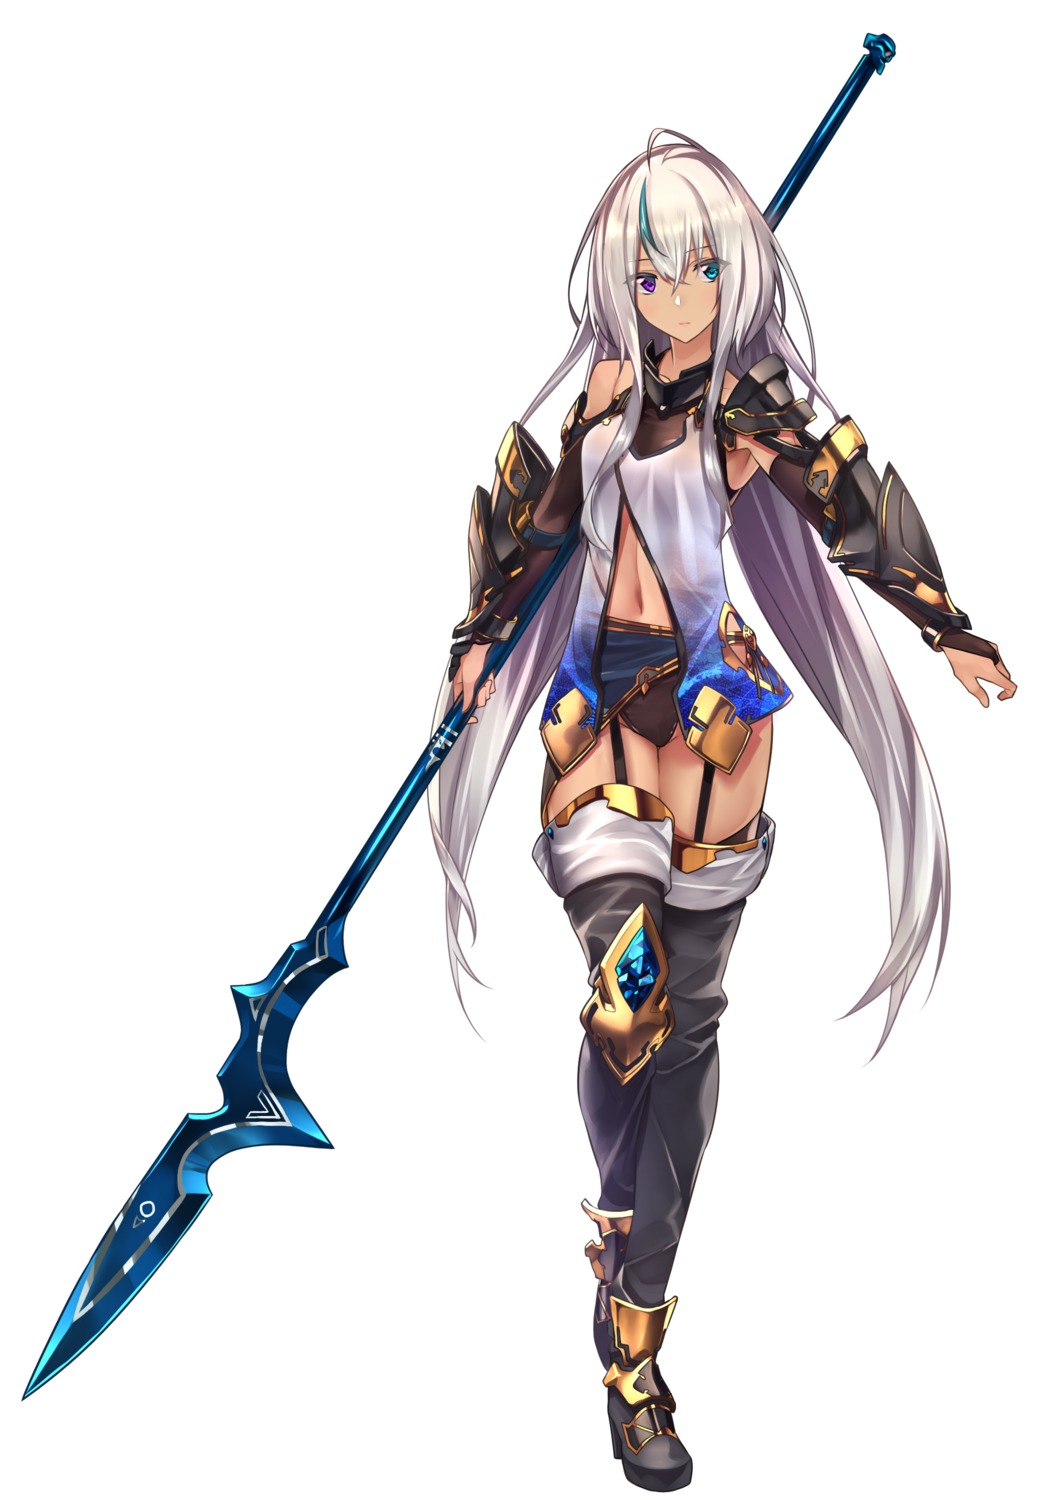 armor baffu heels heterochromia stockings thighhighs weapon yuna_(baffu)